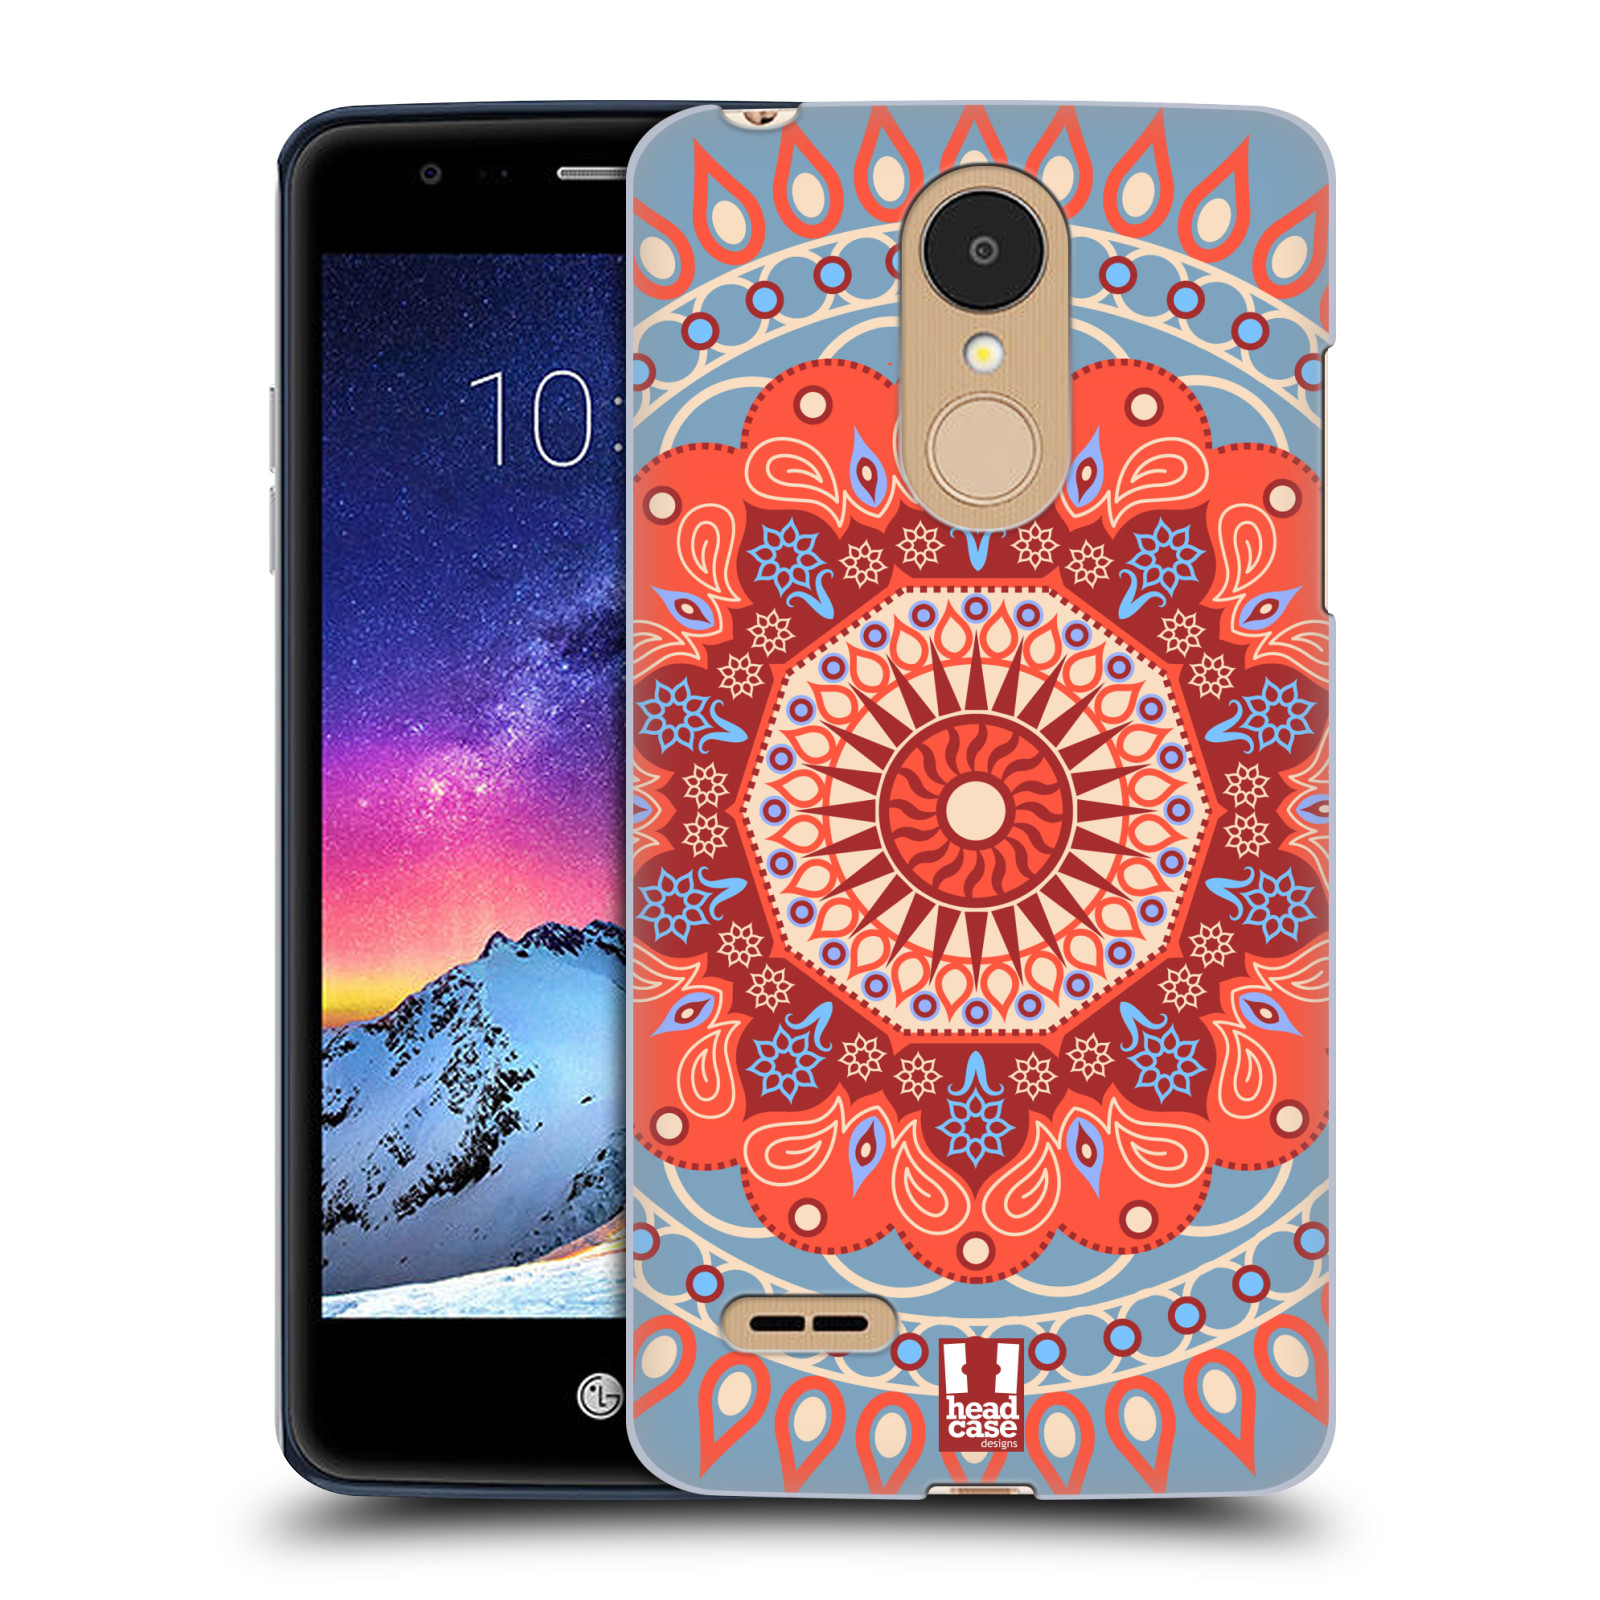 HEAD CASE plastový obal na mobil LG K9 / K8 2018 vzor Indie Mandala slunce barevný motiv ČERVENÁ A MODRÁ